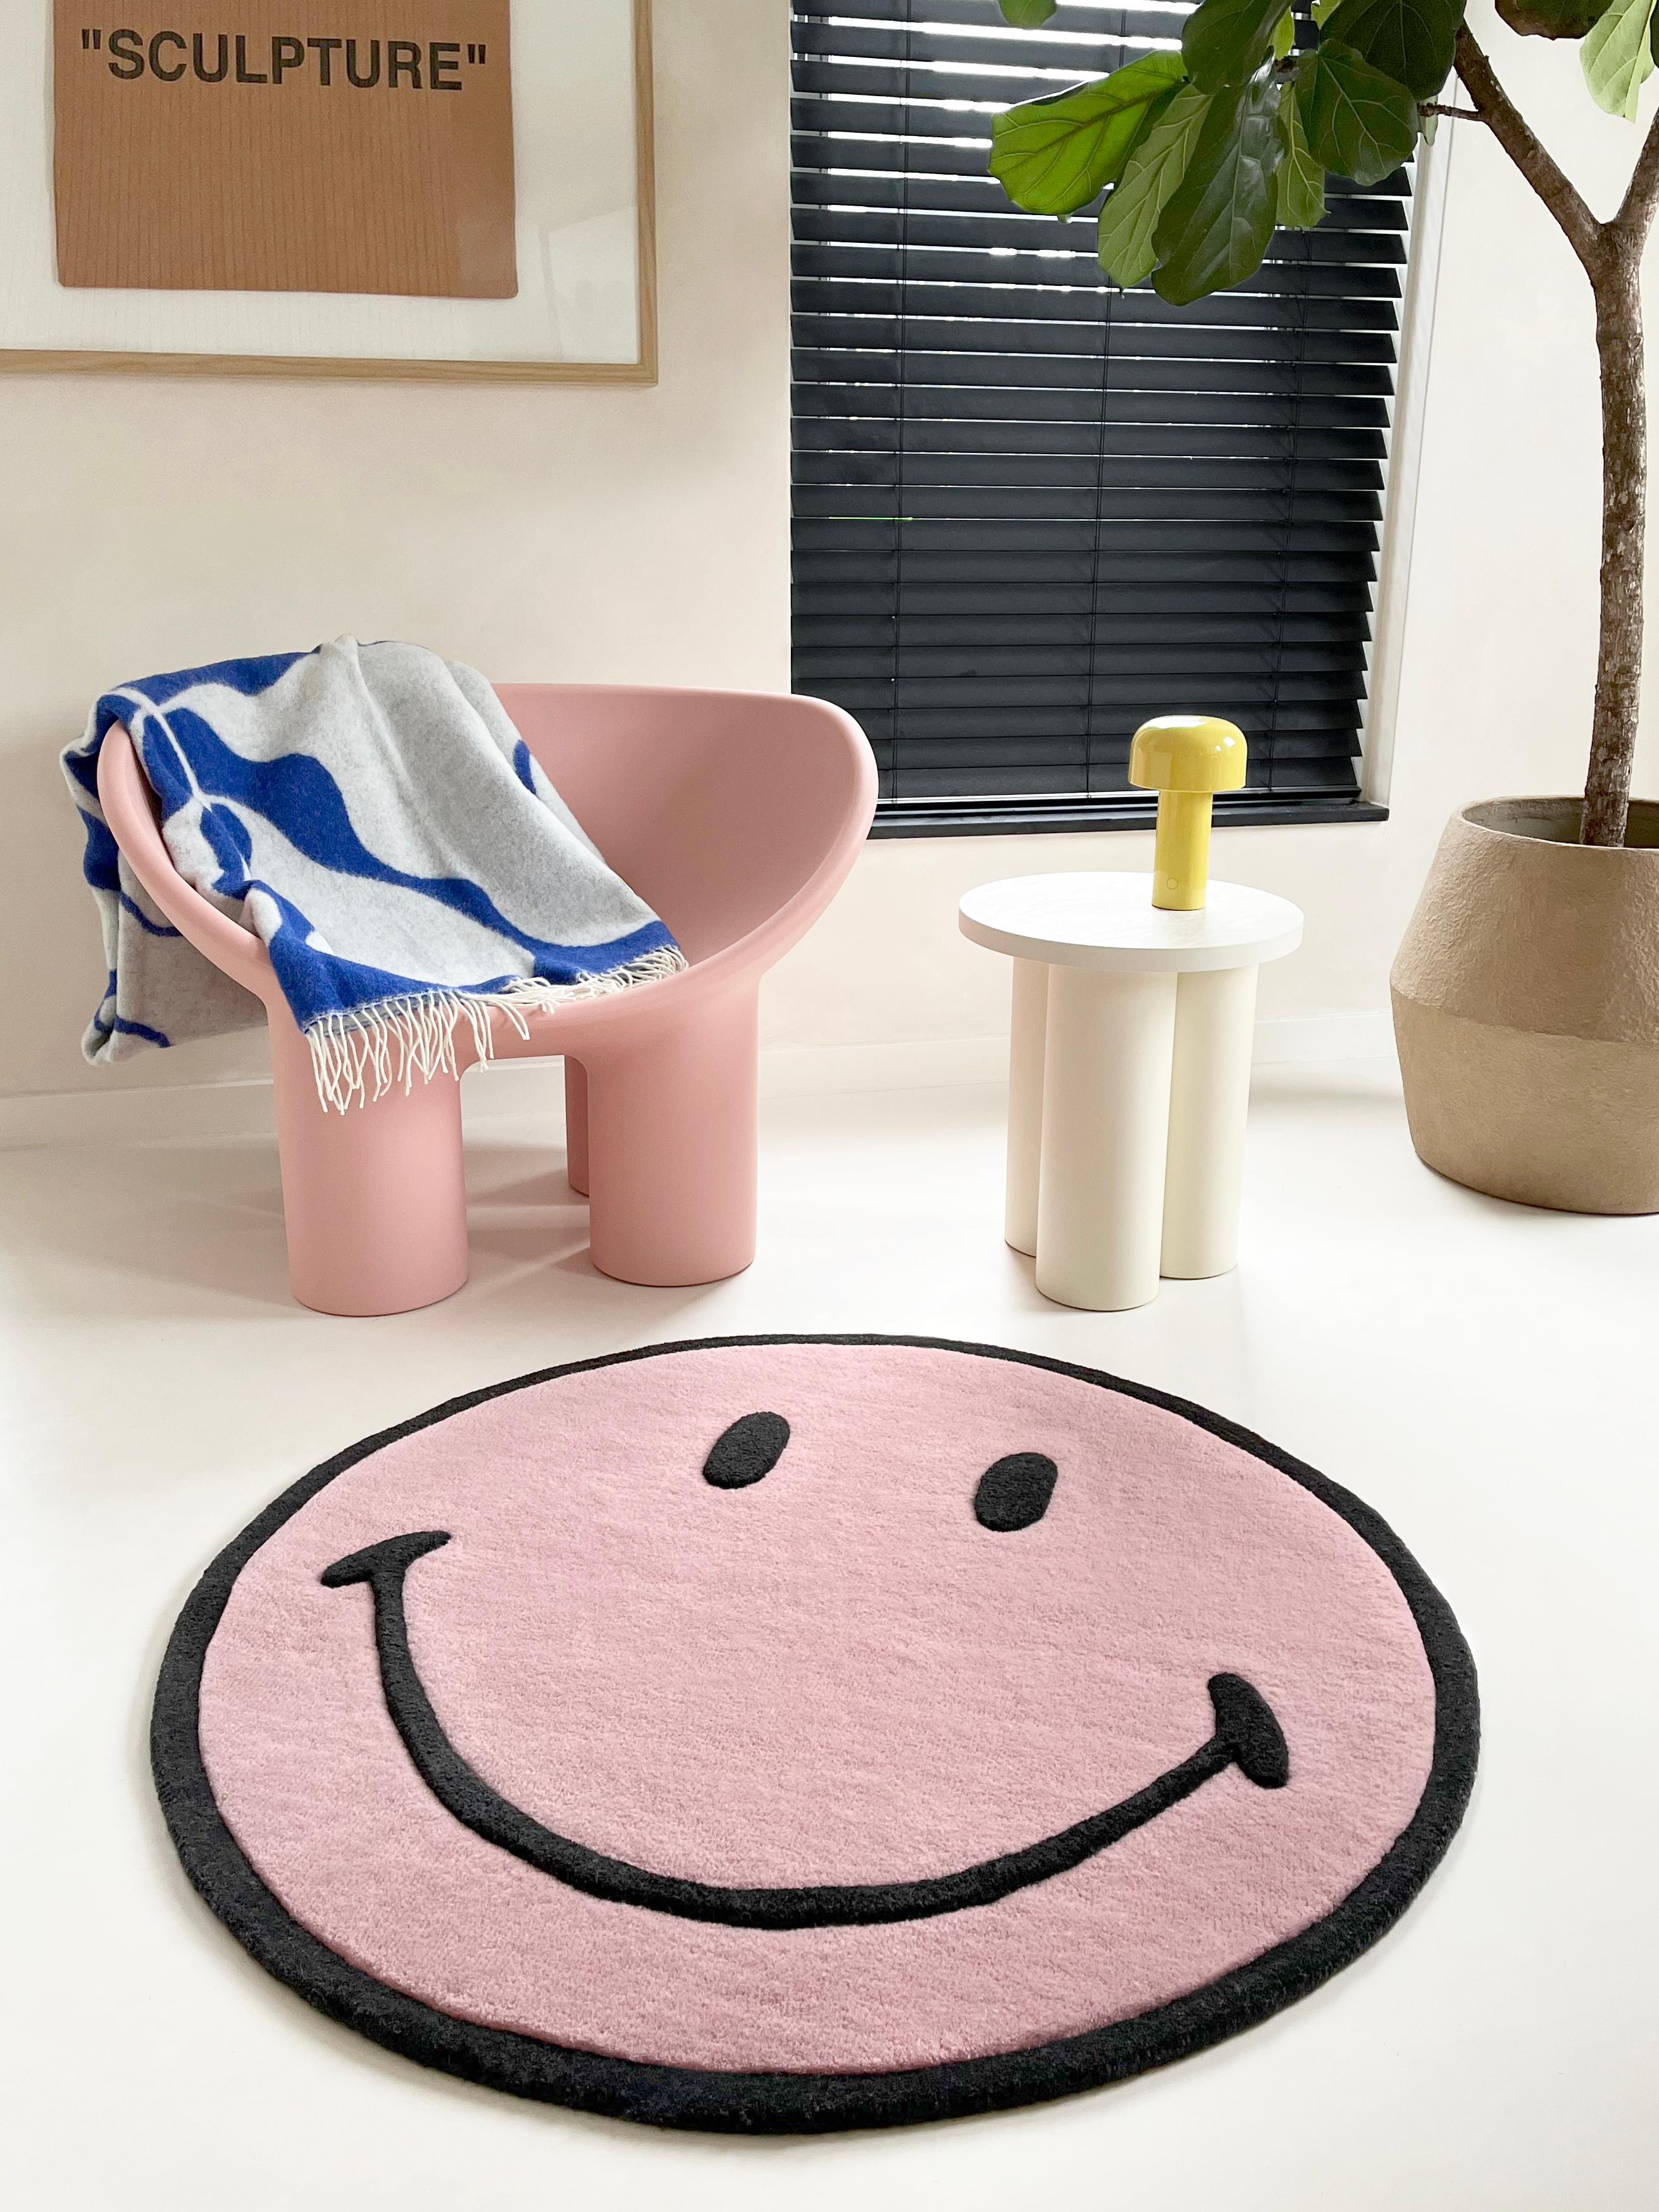 Wir haben uns mit der weltweit glücklichsten Lifestyle-Marke Smiley® für eine exklusive Teppichkollektion zusammengetan. Der ikonische Smiley®, der in diesem Jahr sein 50-jähriges Jubiläum feiert, wird in eine superweiche und vor allem superlustige